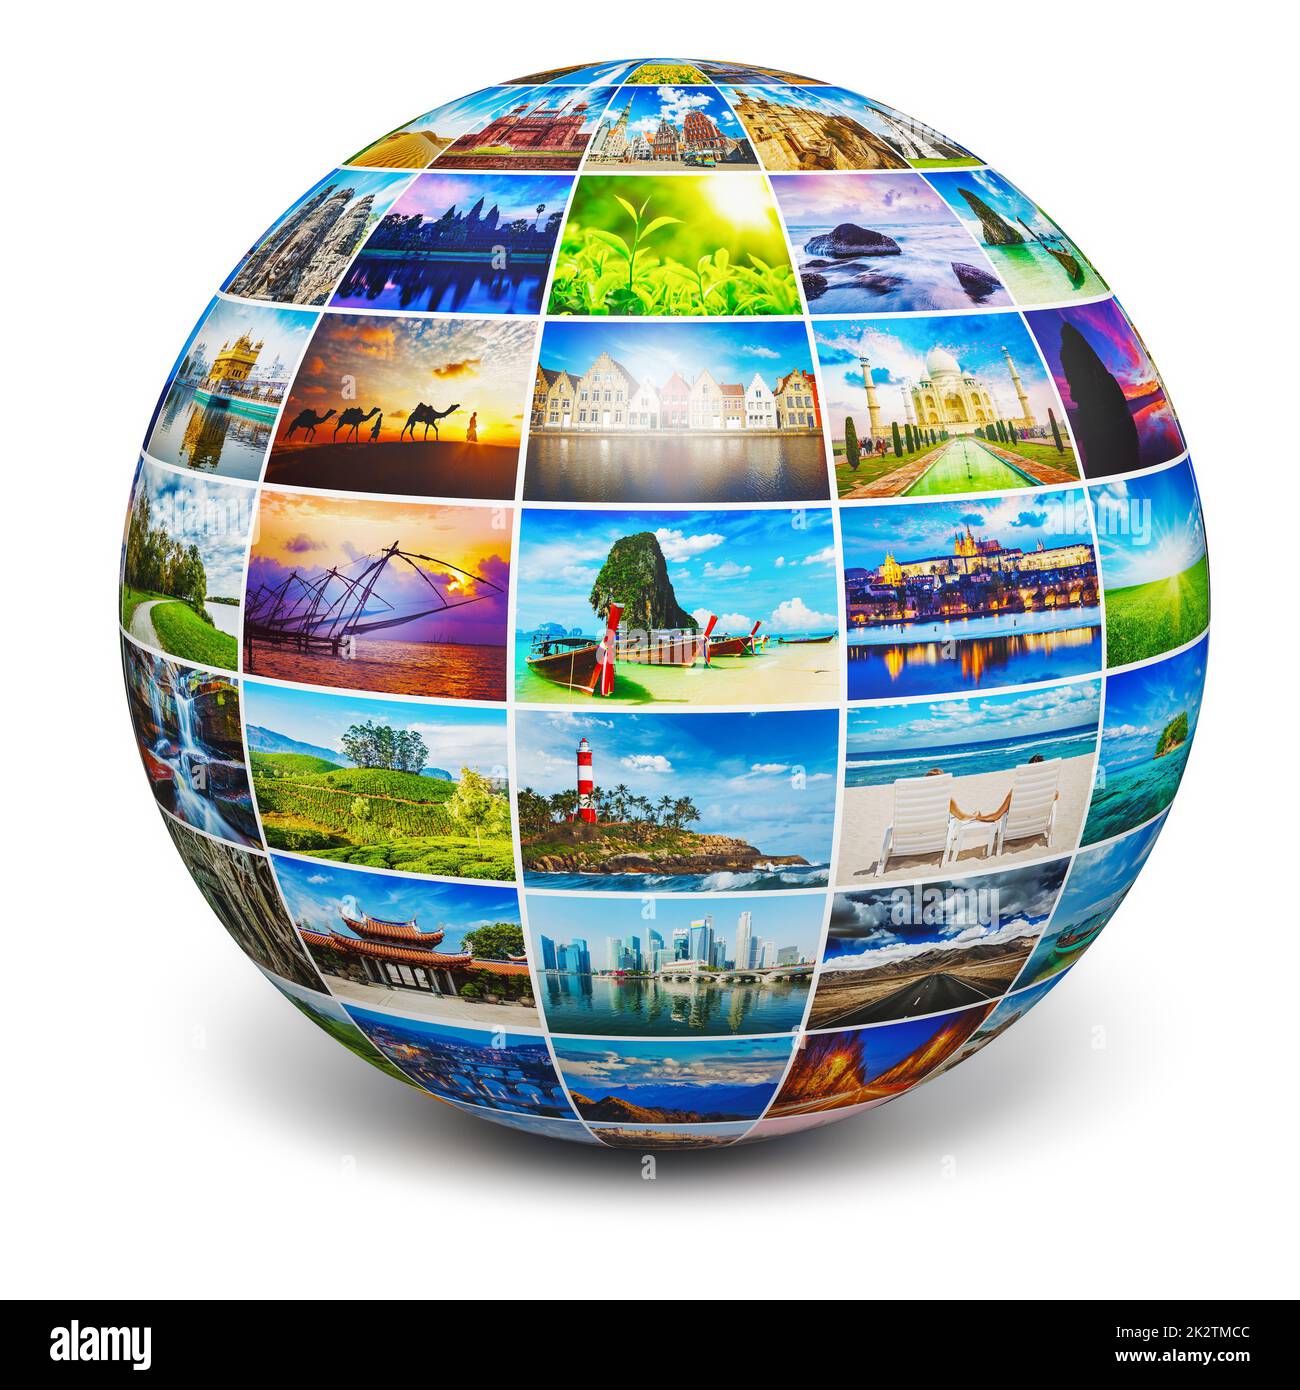 Globus mit Reisefotos Stockfoto